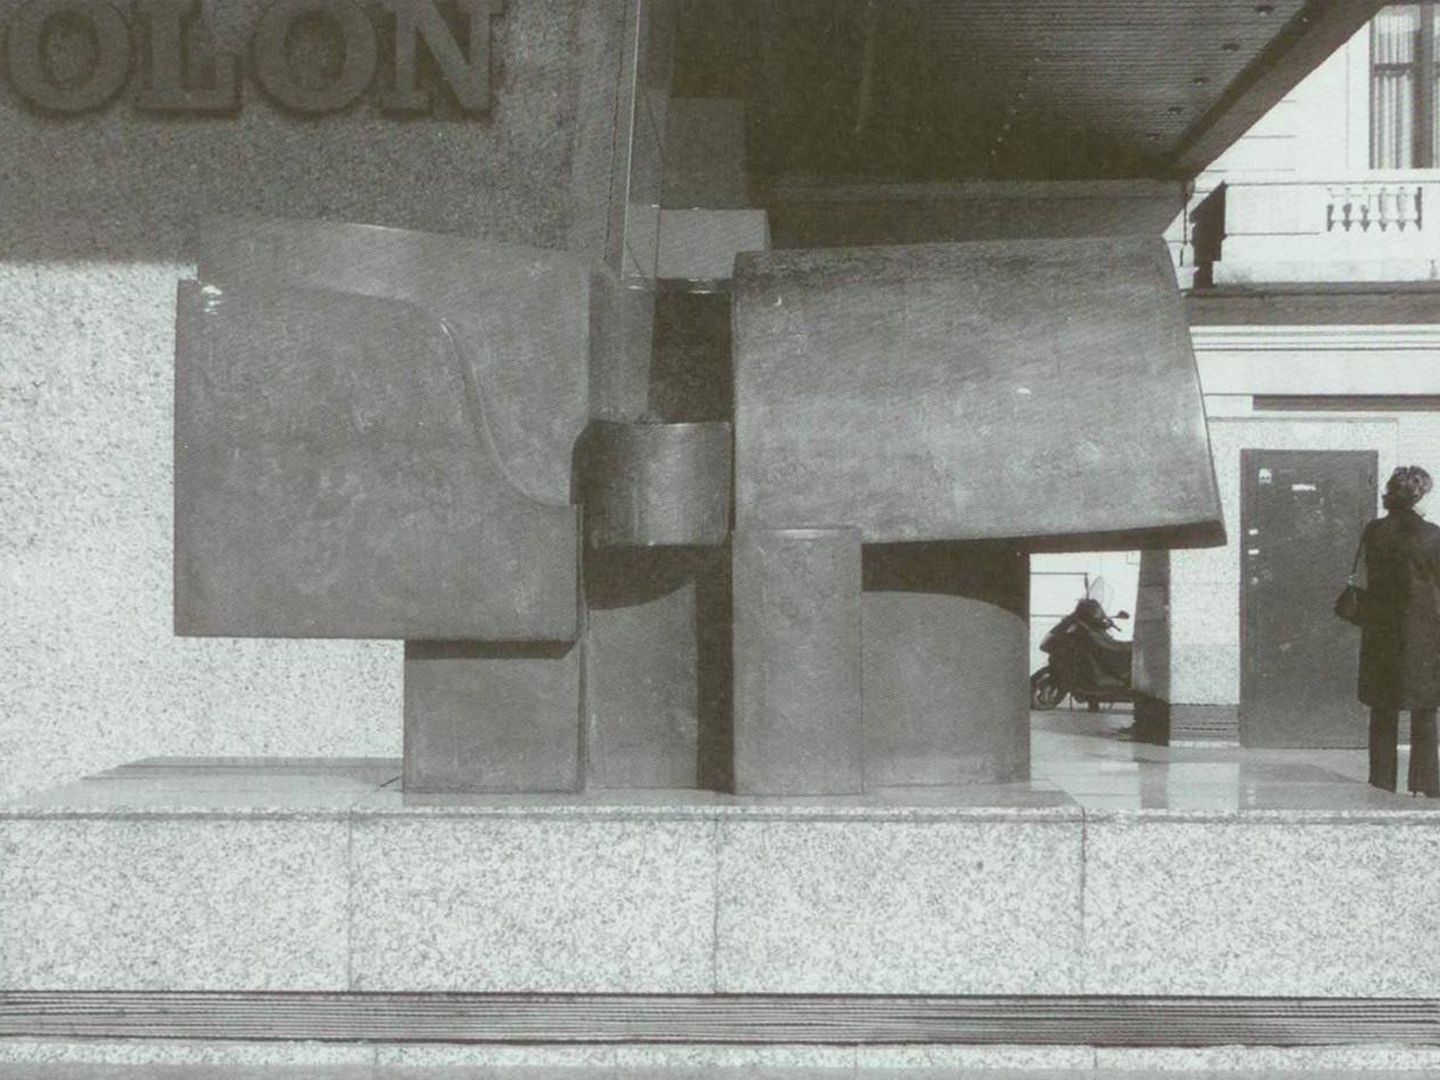  Torres de Colón, Madrid, 1965. Bronce. (Cortesía de Silvia Blanco)